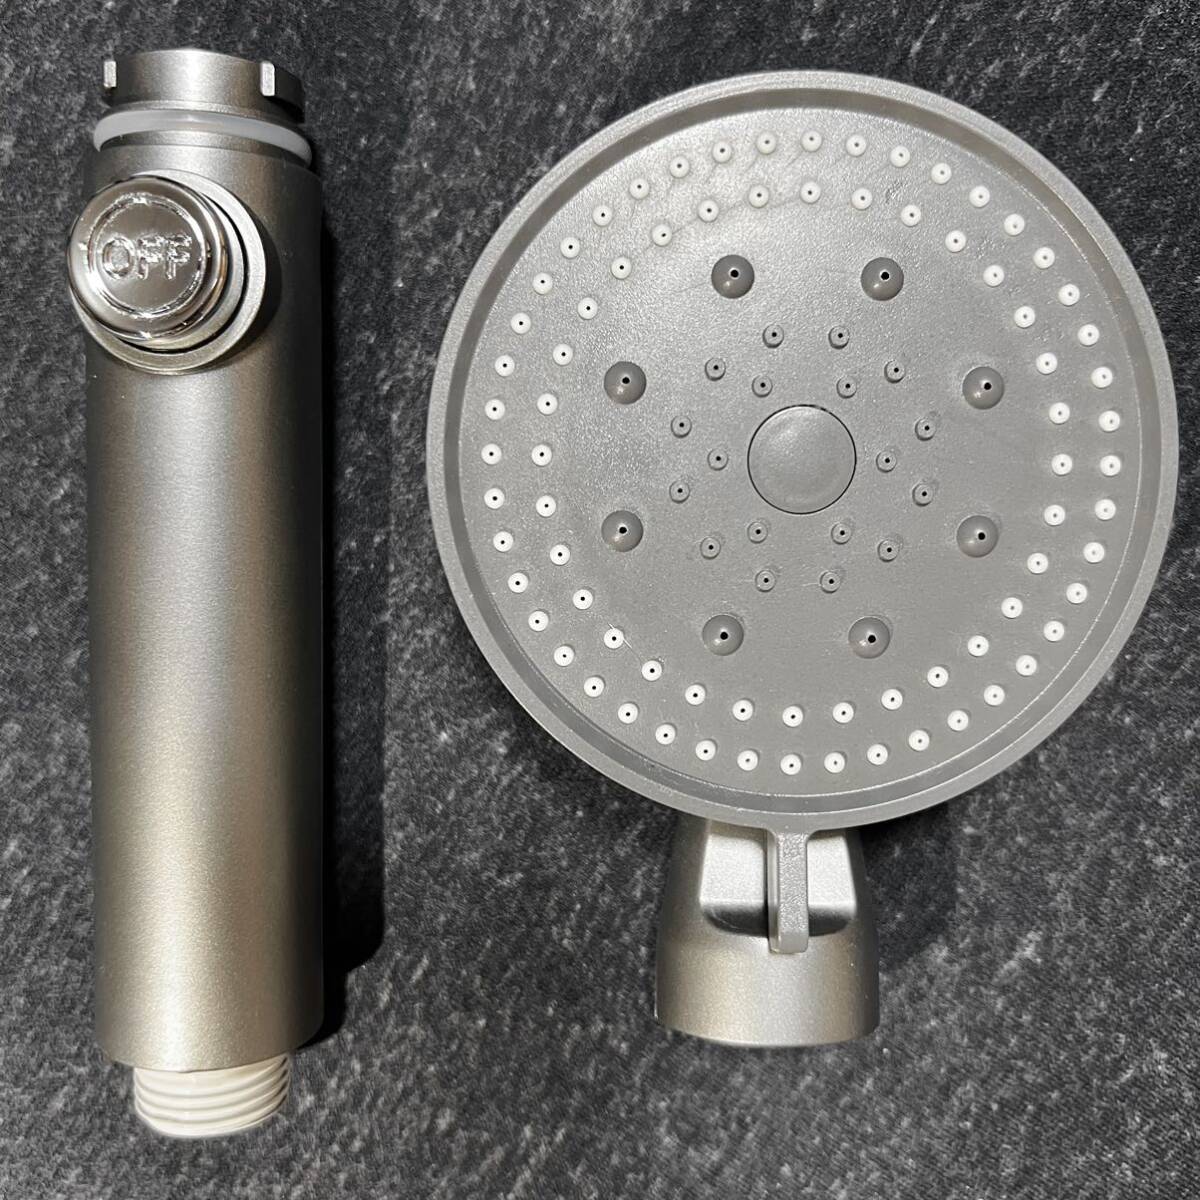 新品 シャワーヘッド 5段階調整 止水ボタン付き 高水圧 ミスト 霧状 漏れ防止シールテープ付き お風呂 バス 節水 高圧 増圧 保湿 美肌 掃除